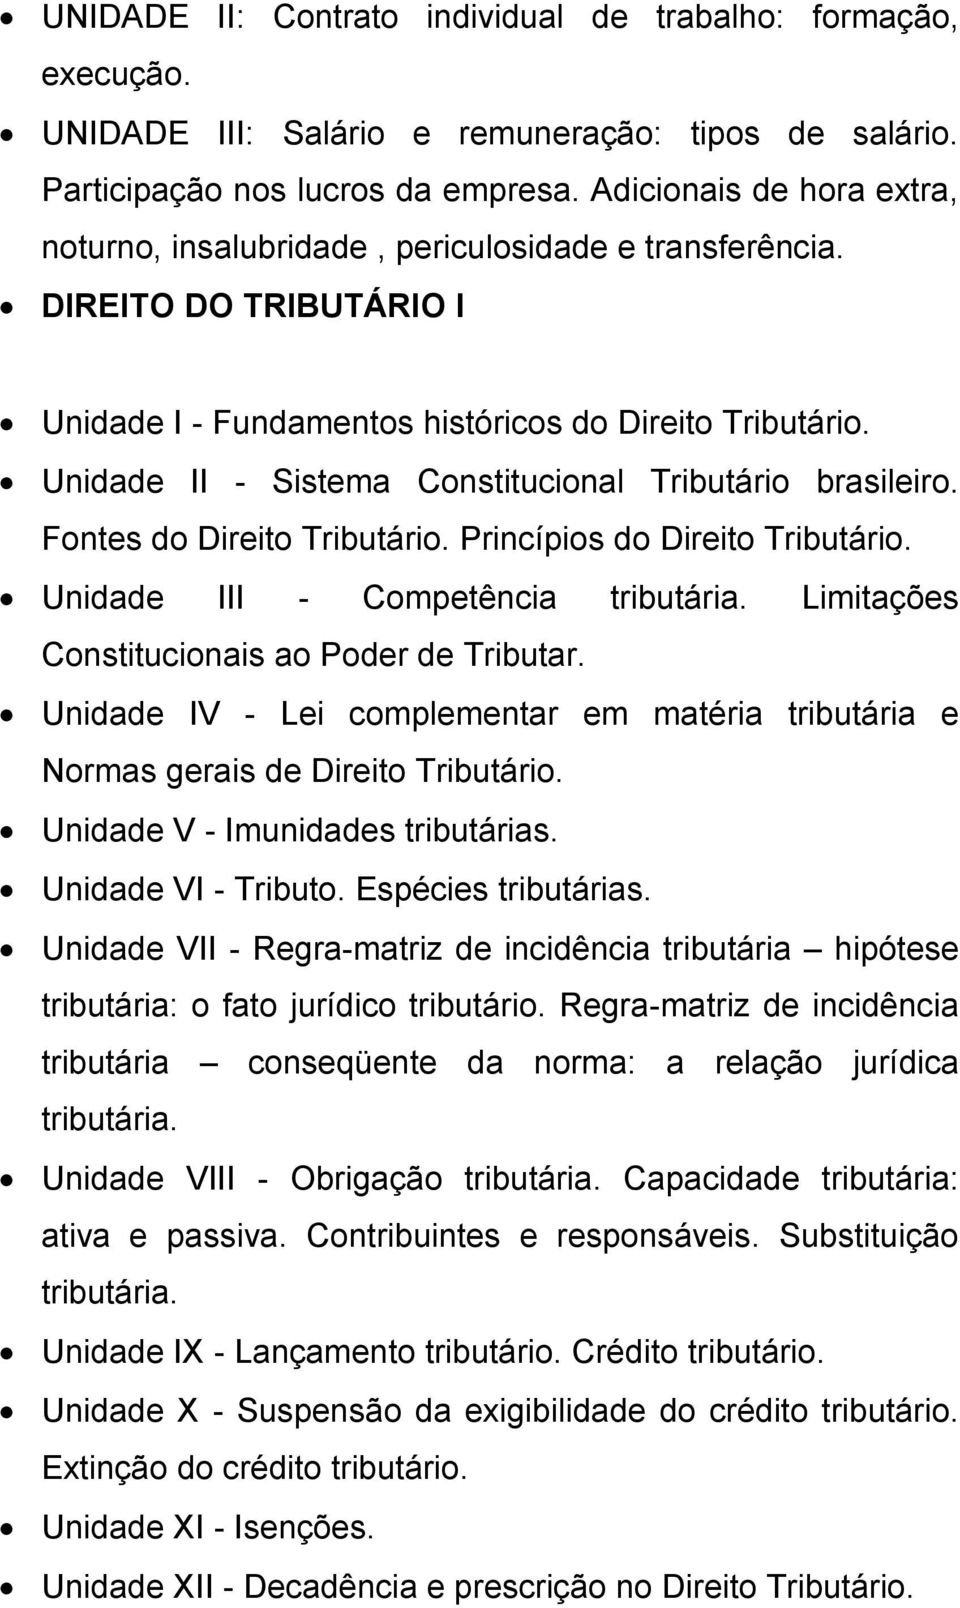 Unidade II - Sistema Constitucional Tributário brasileiro. Fontes do Direito Tributário. Princípios do Direito Tributário. Unidade III - Competência tributária.